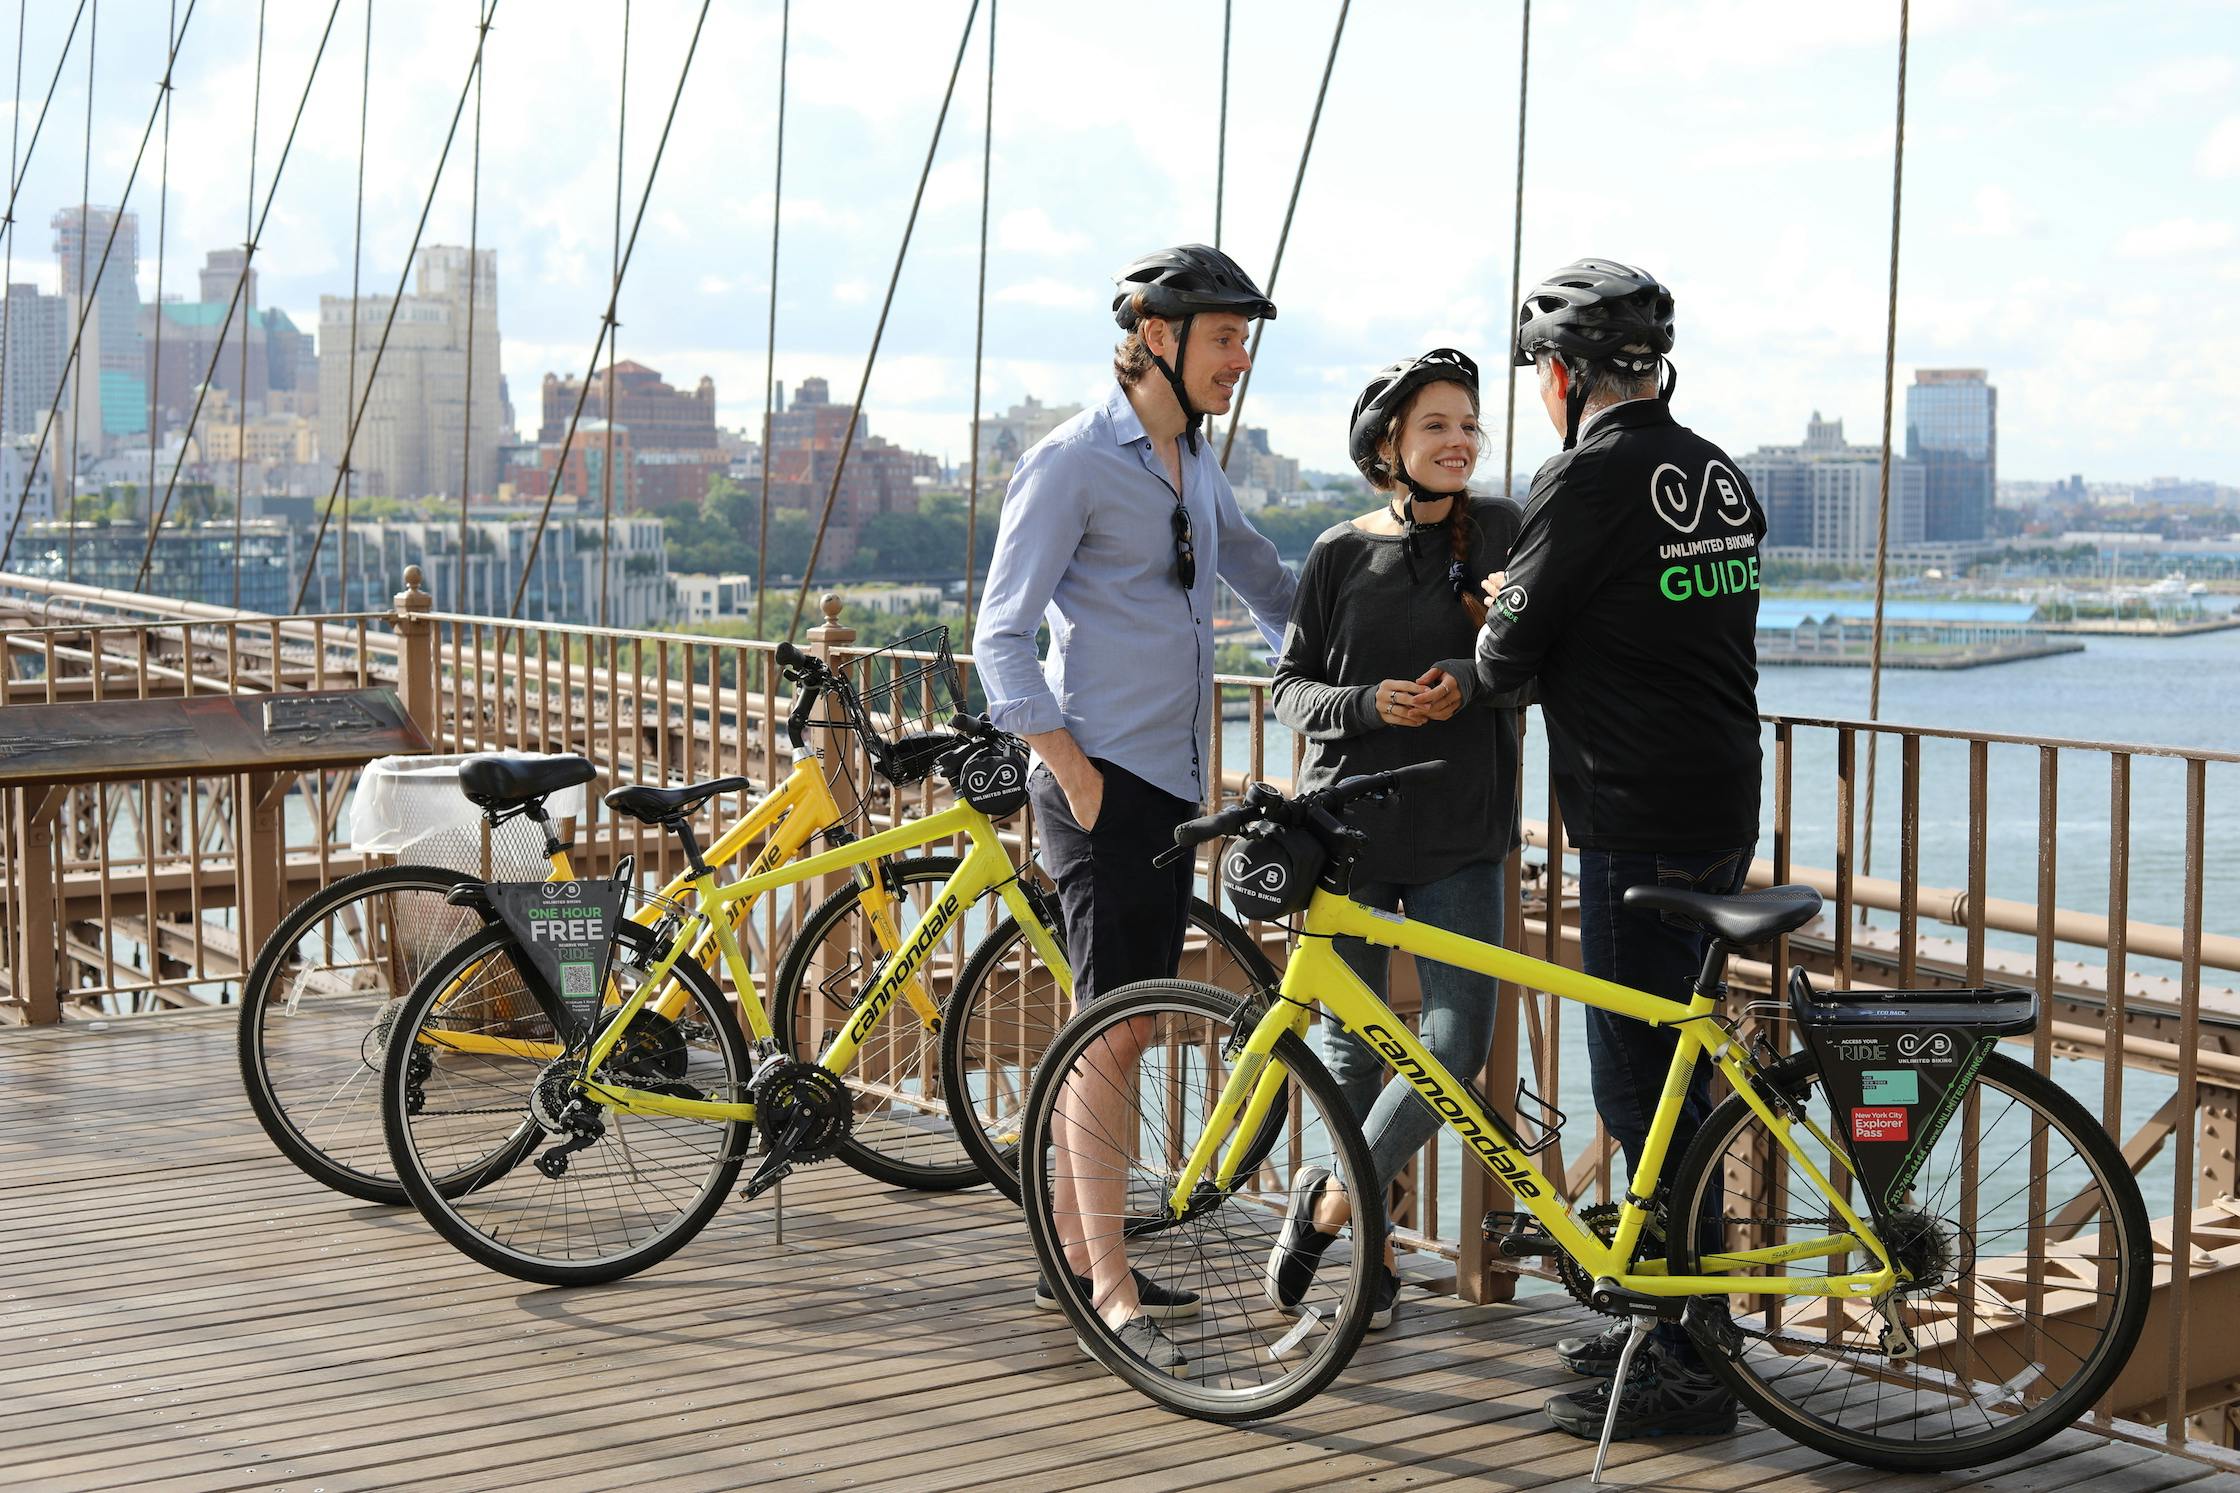 Brooklyn Bridge-fietstocht